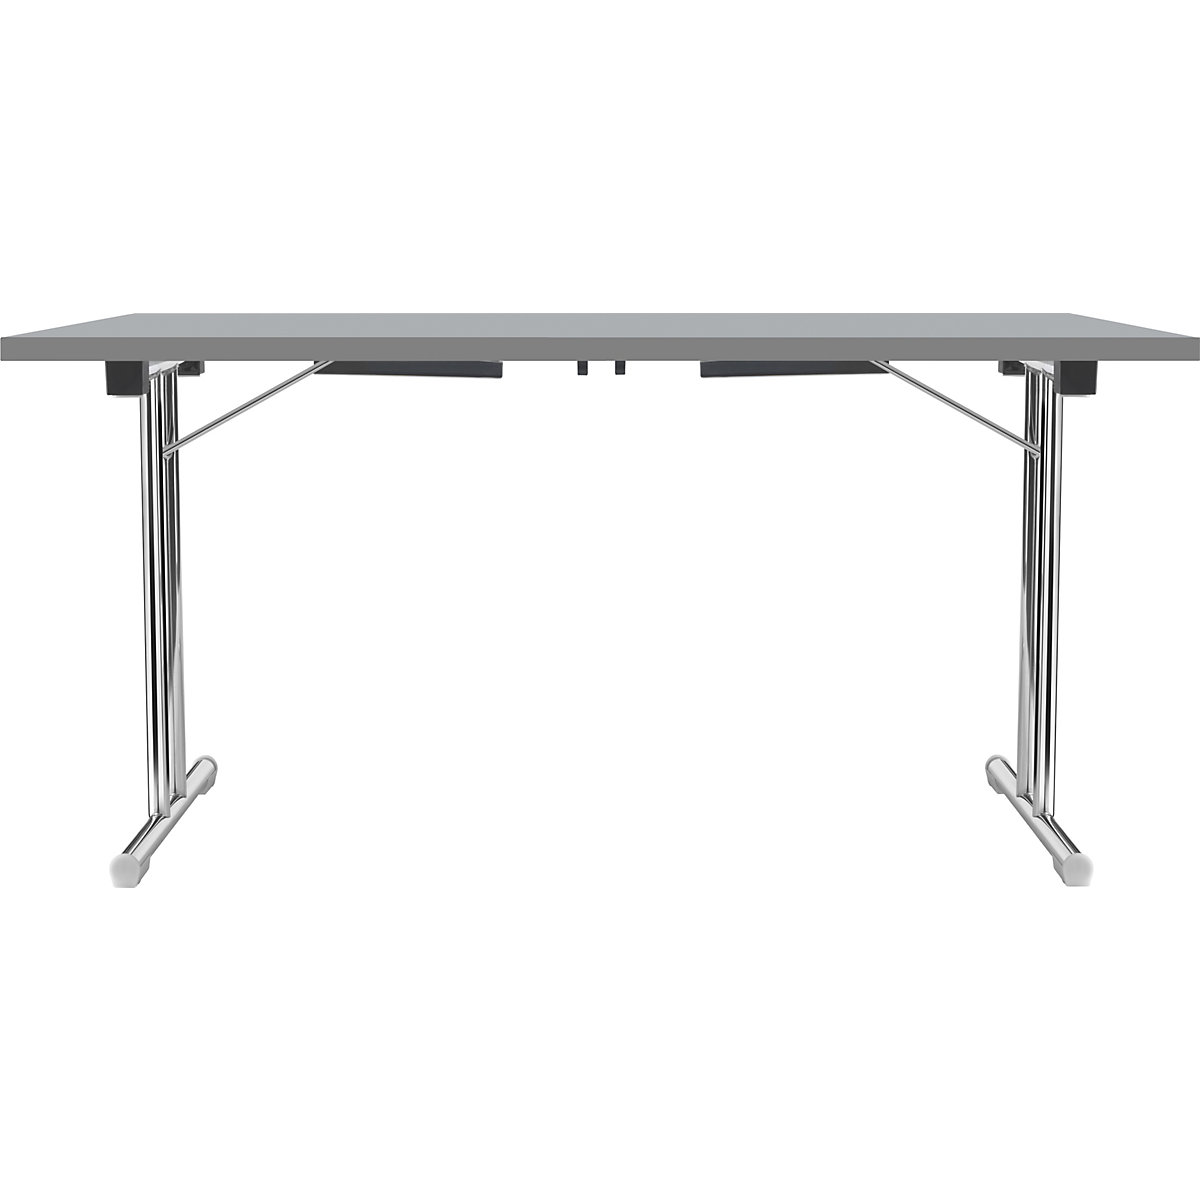 Zložljiva miza z dvojnim podnožjem v obliki črke T, ogrodje iz okrogle jeklene cevi, kromirano, svetlo siva/antracitna, ŠxG 1200 x 600 mm-3